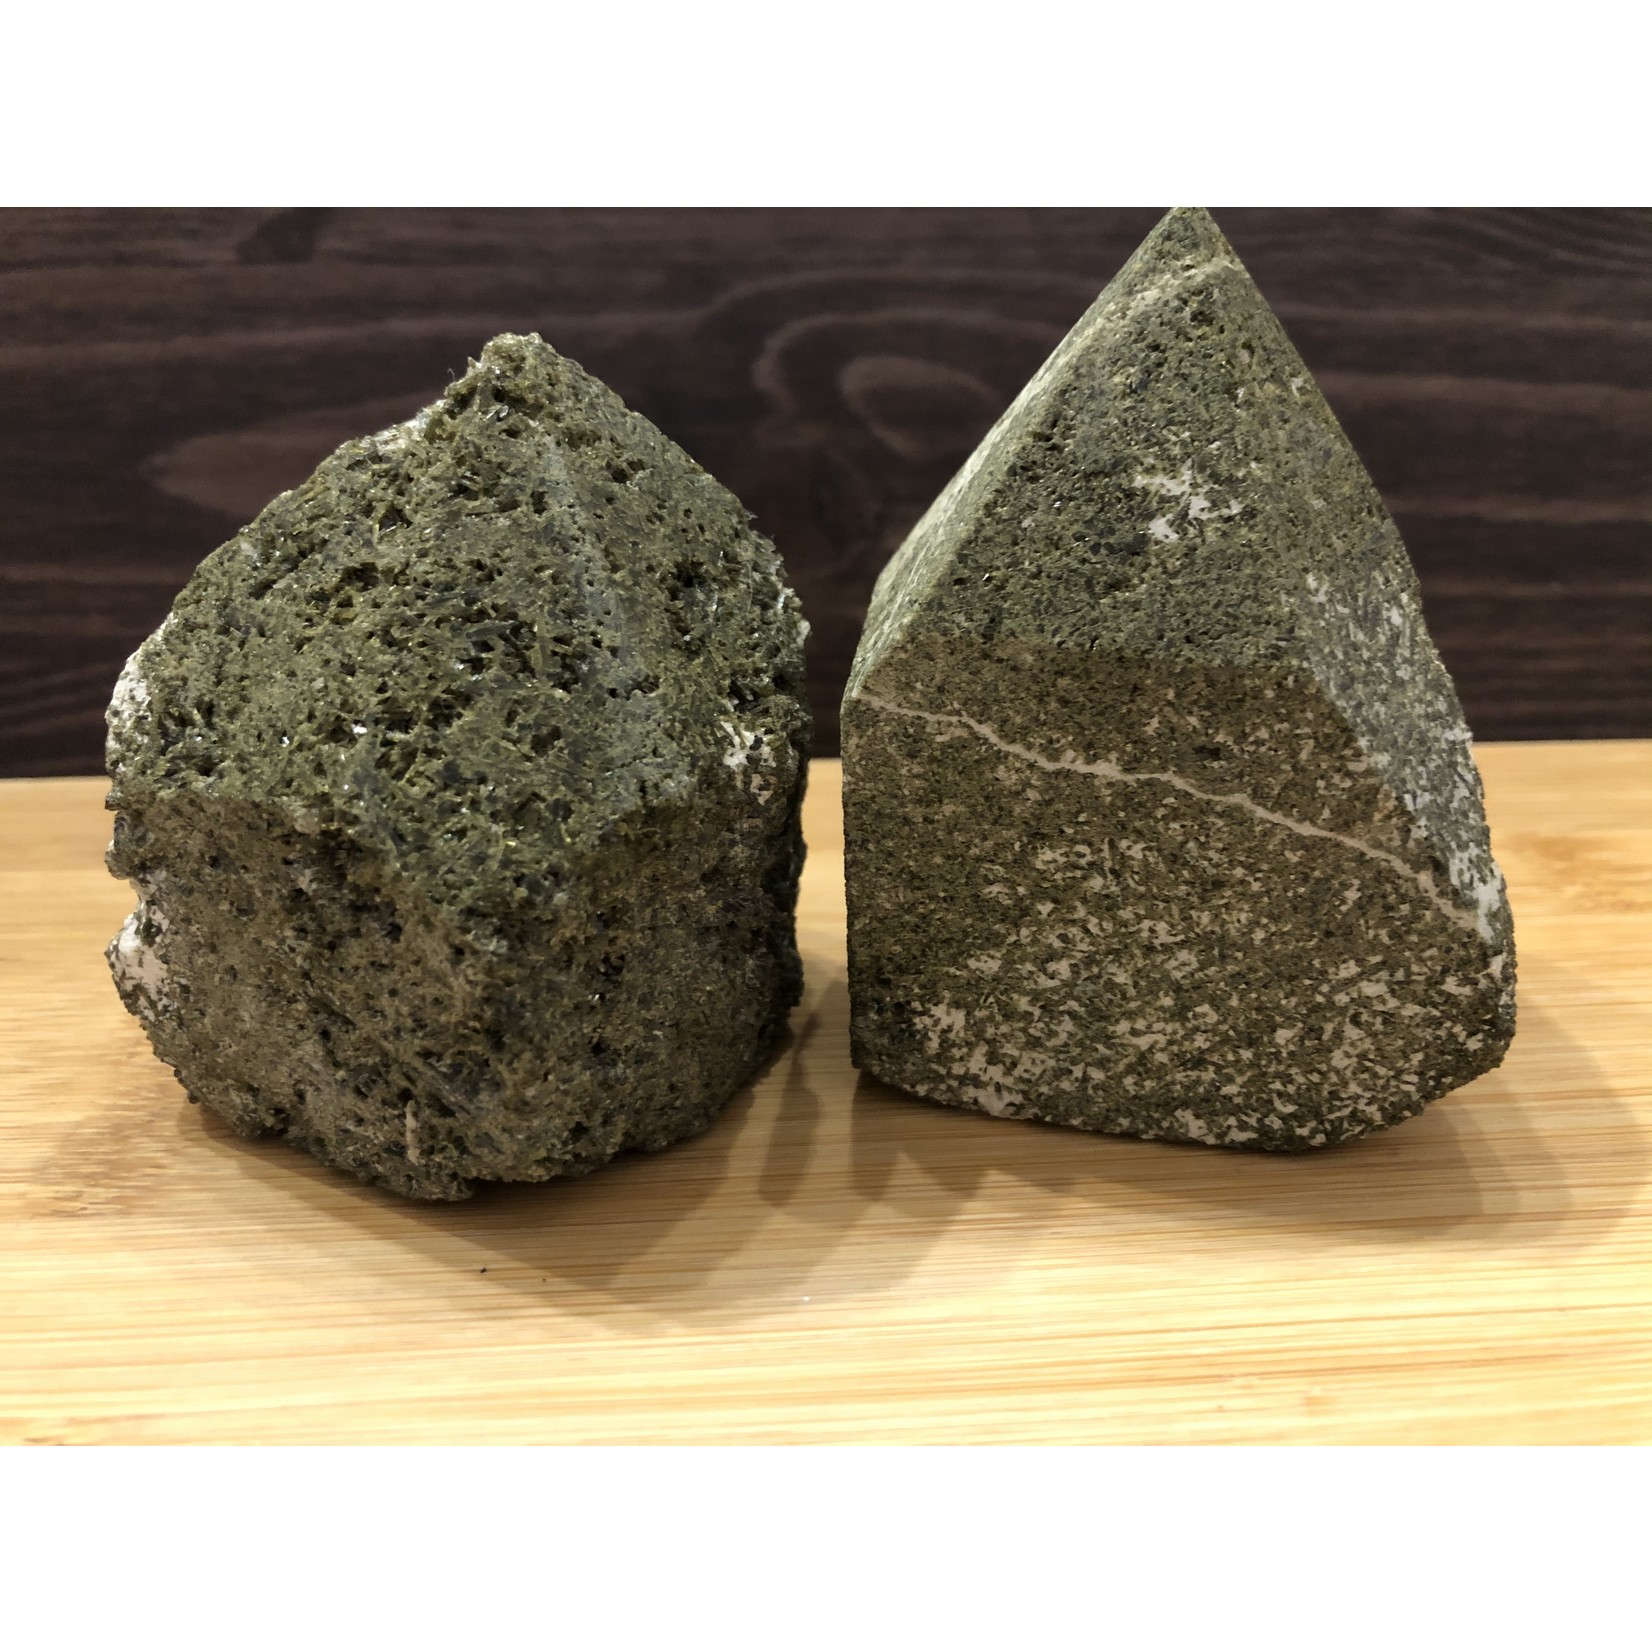 Polished Epidote Stone – Spiritual and Abundance Enhance